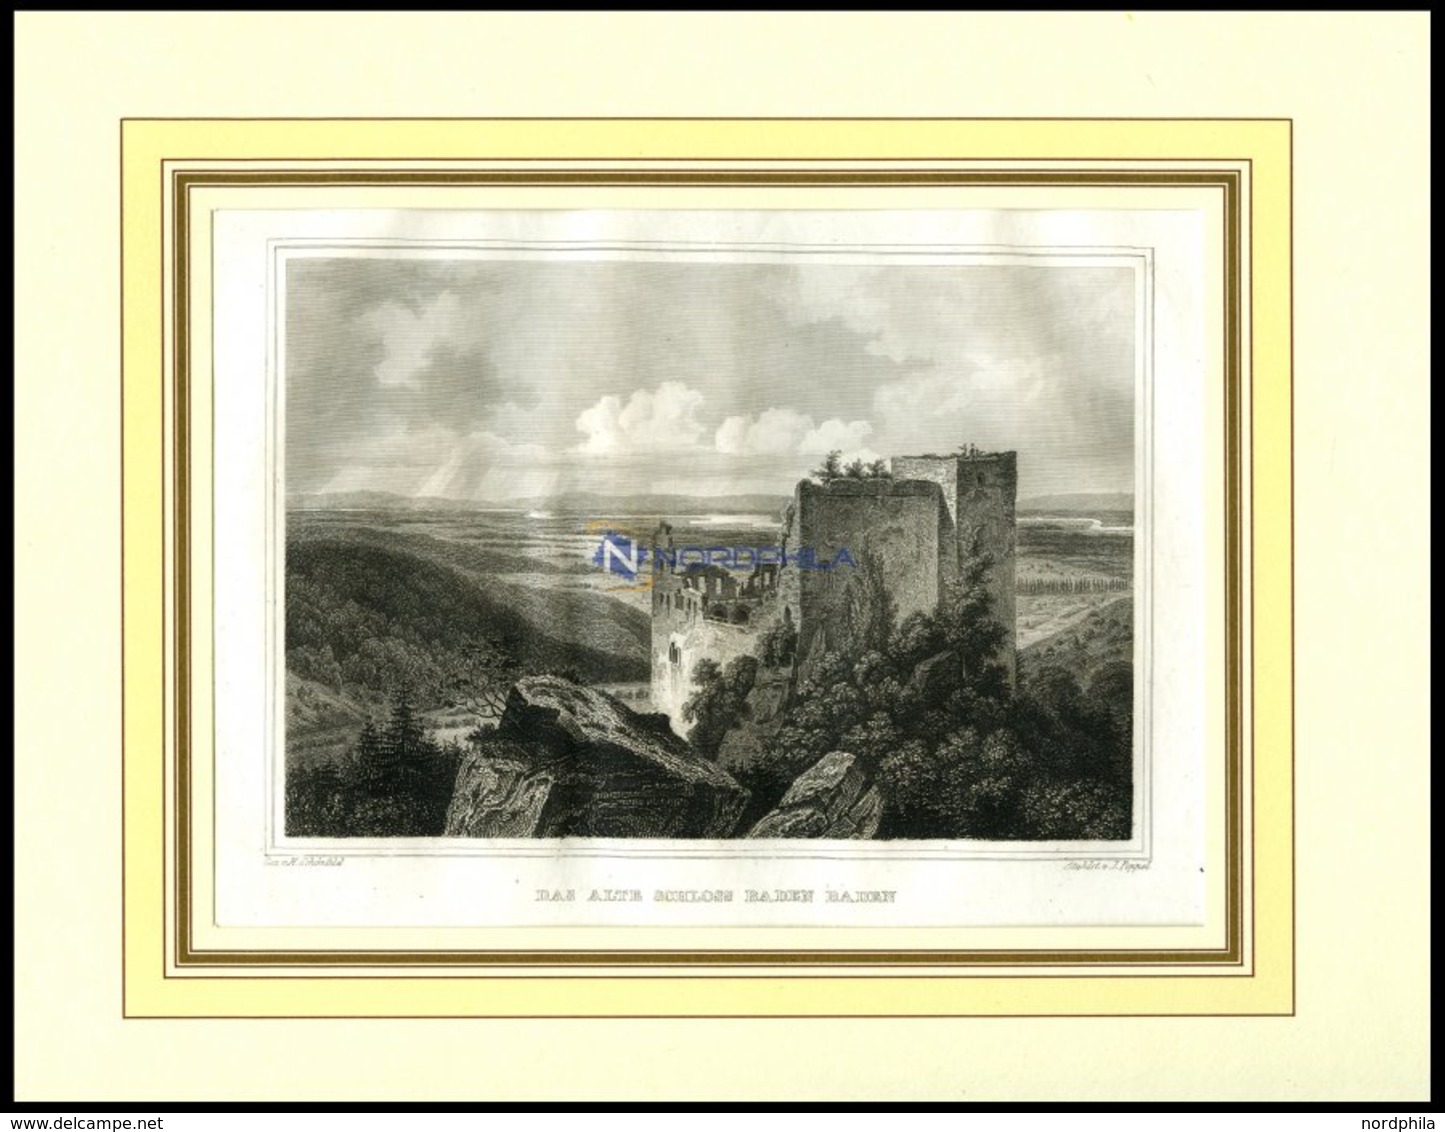 BADEN-BADEN: Die Ruine Des Alten Schlosses, Stahlstich Von Schönfeld/Poppel, 1840 - Lithographien